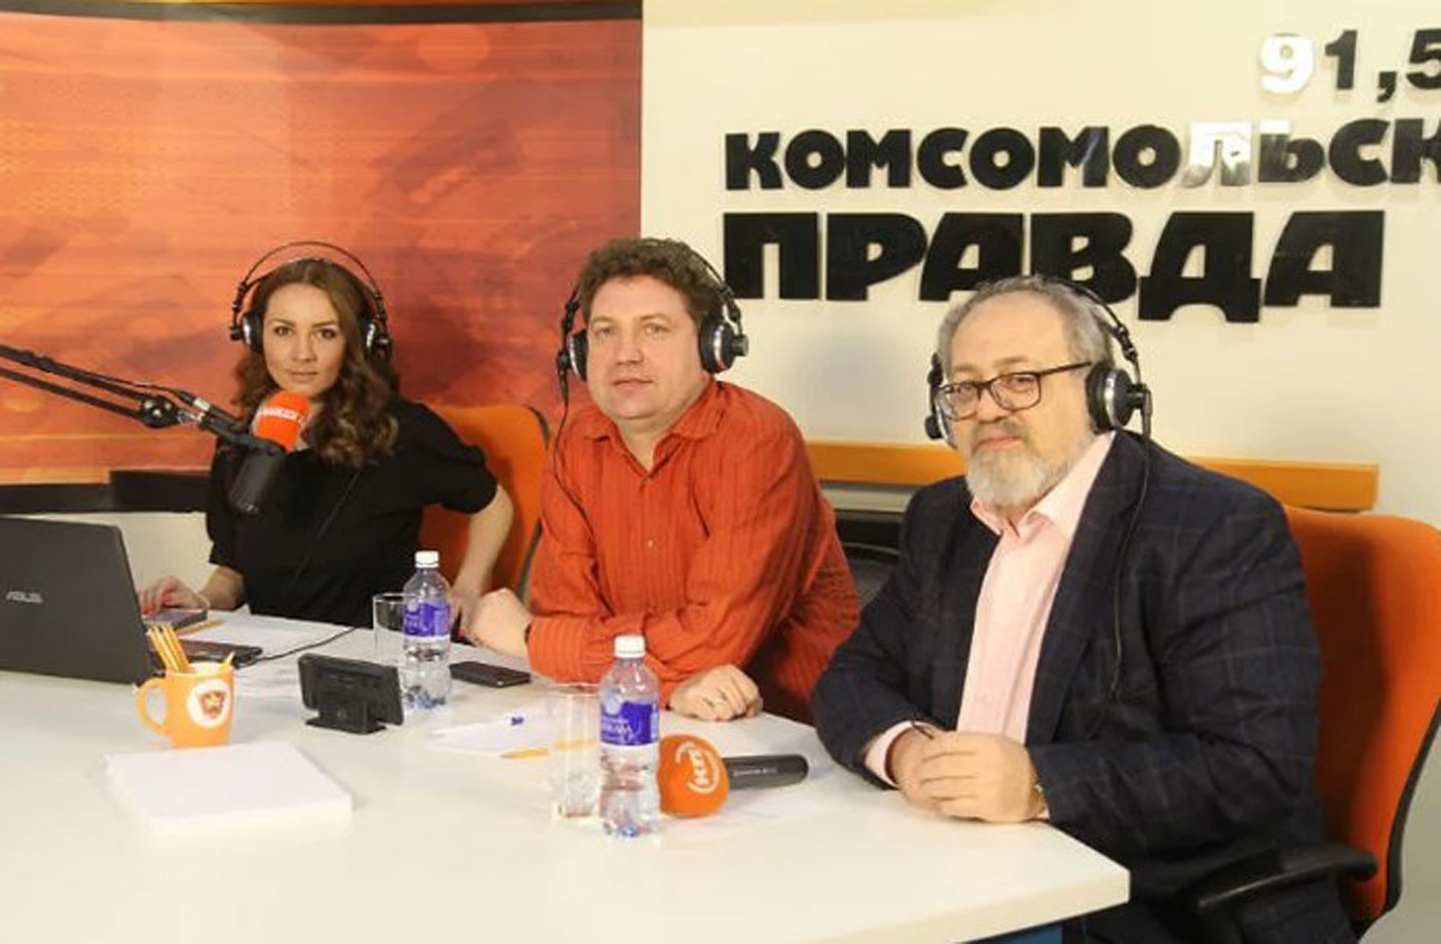 ведущие комсомольской правды радио москва